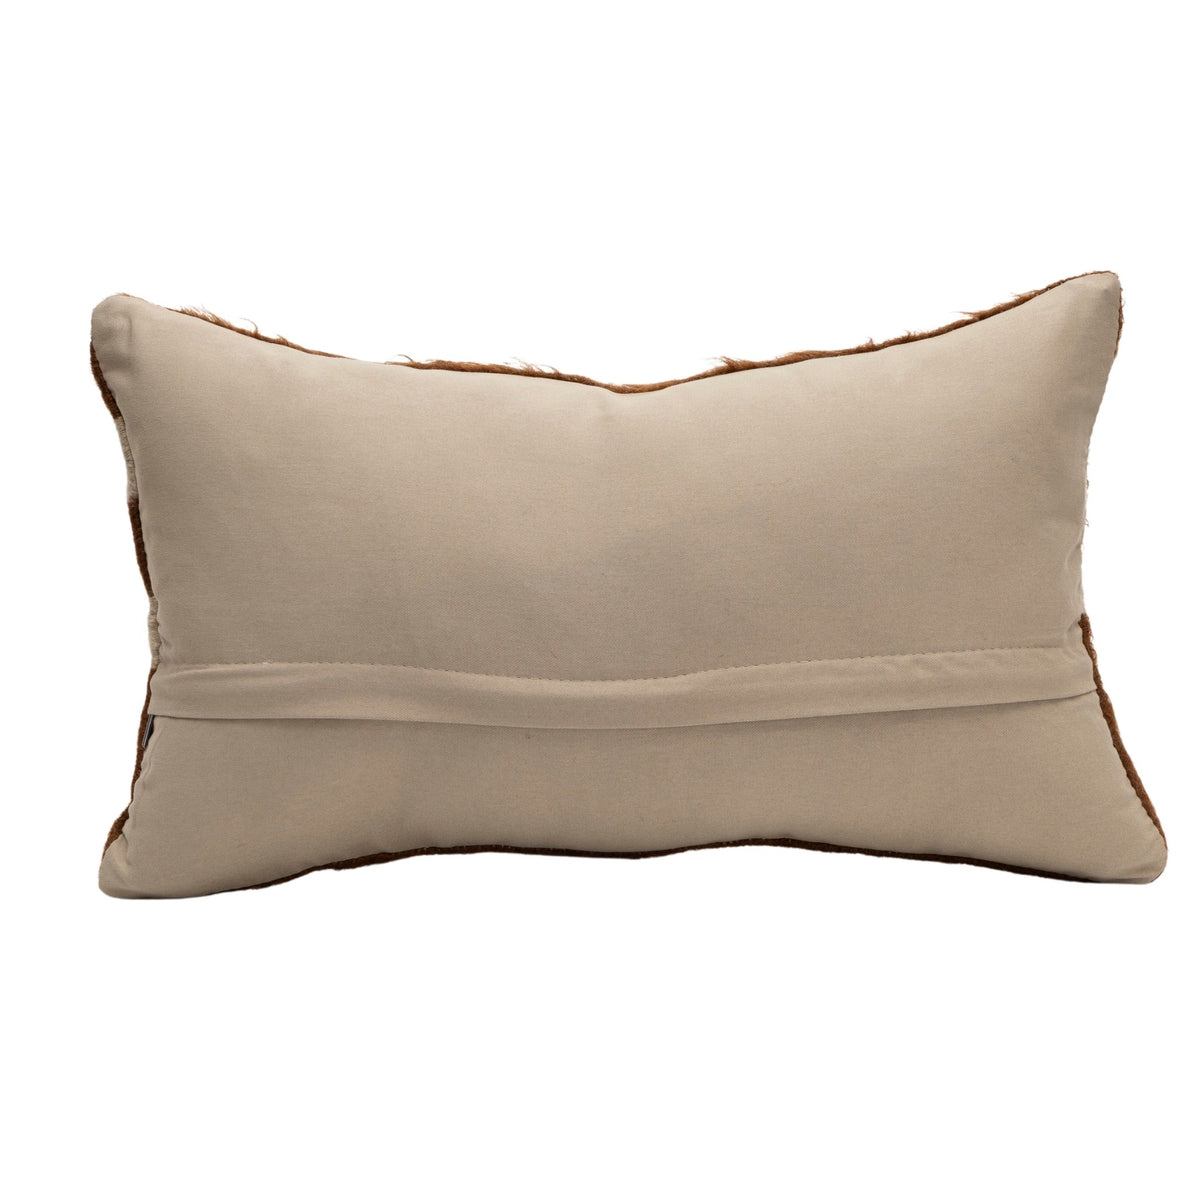 Neutral Wool Kilim Throw Pillow Cover 12" x 20"